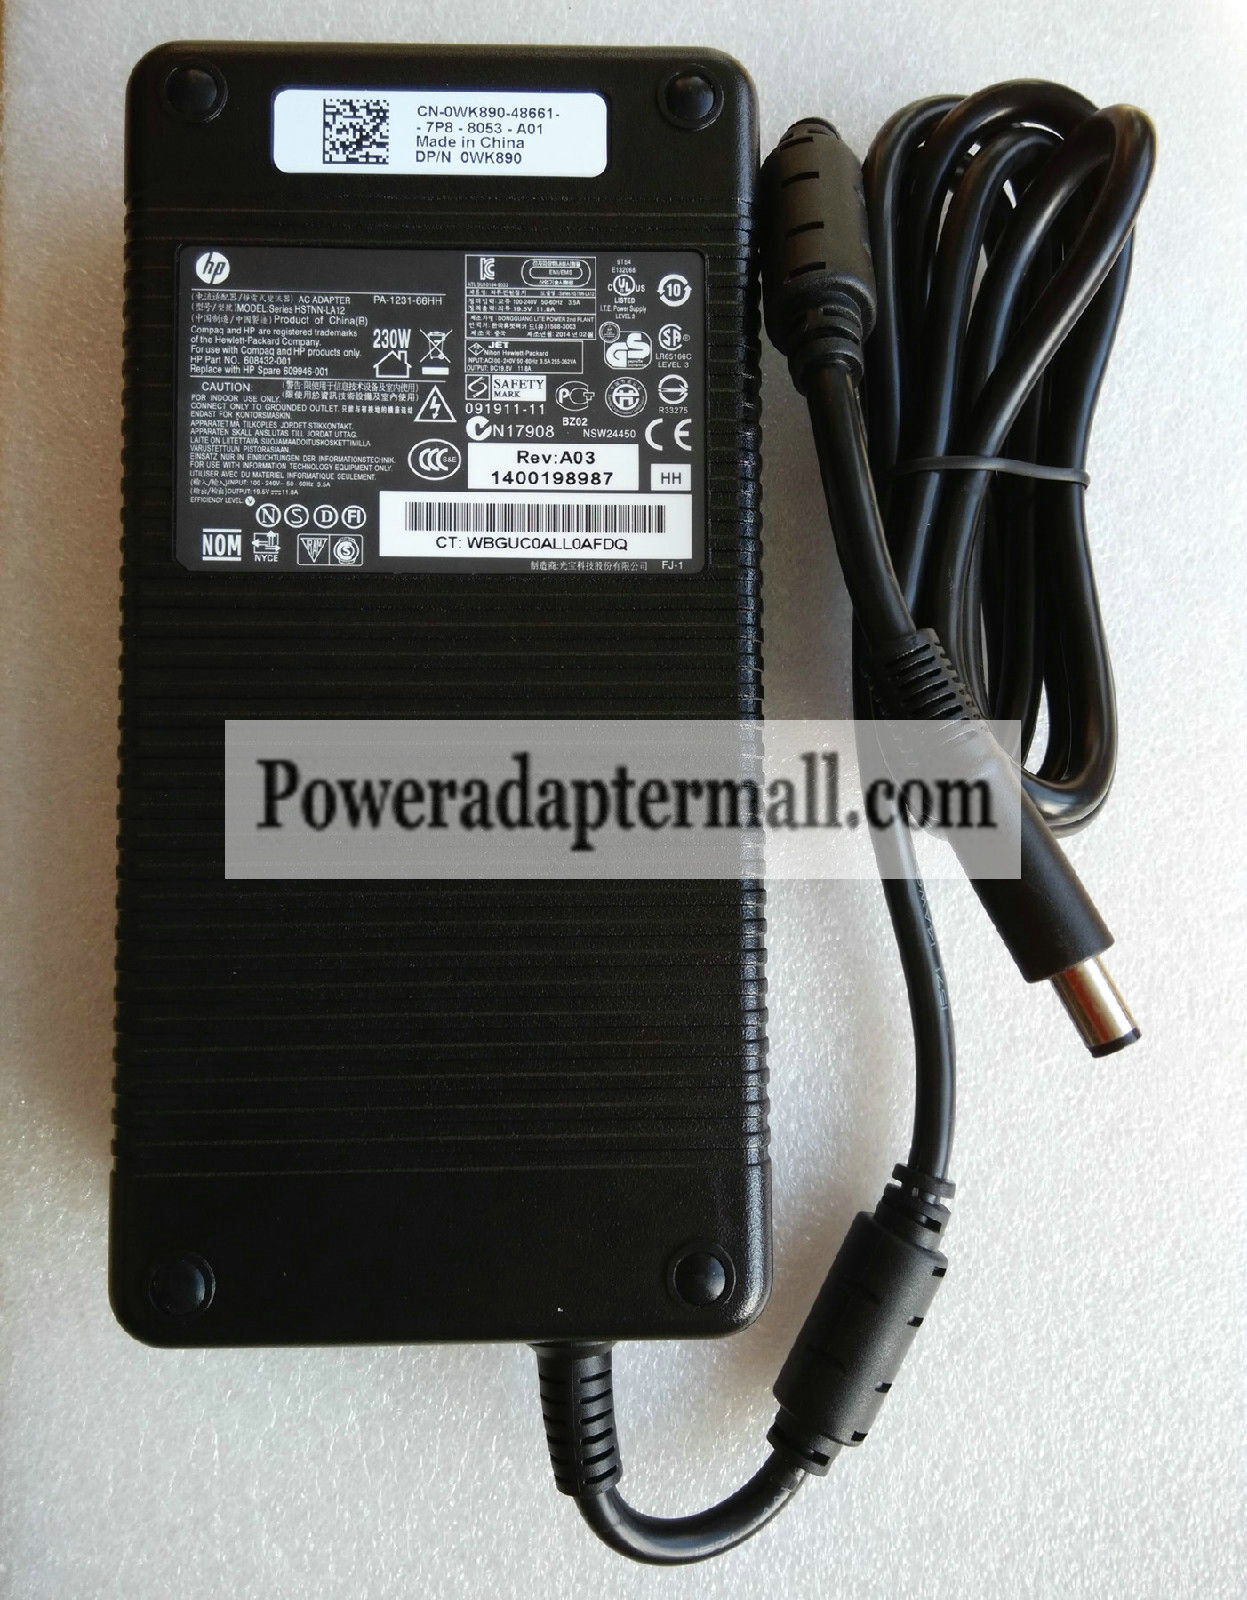 HP 19.5V 11.8A EliteBook 8740w Mobile Workstation AC Adapter